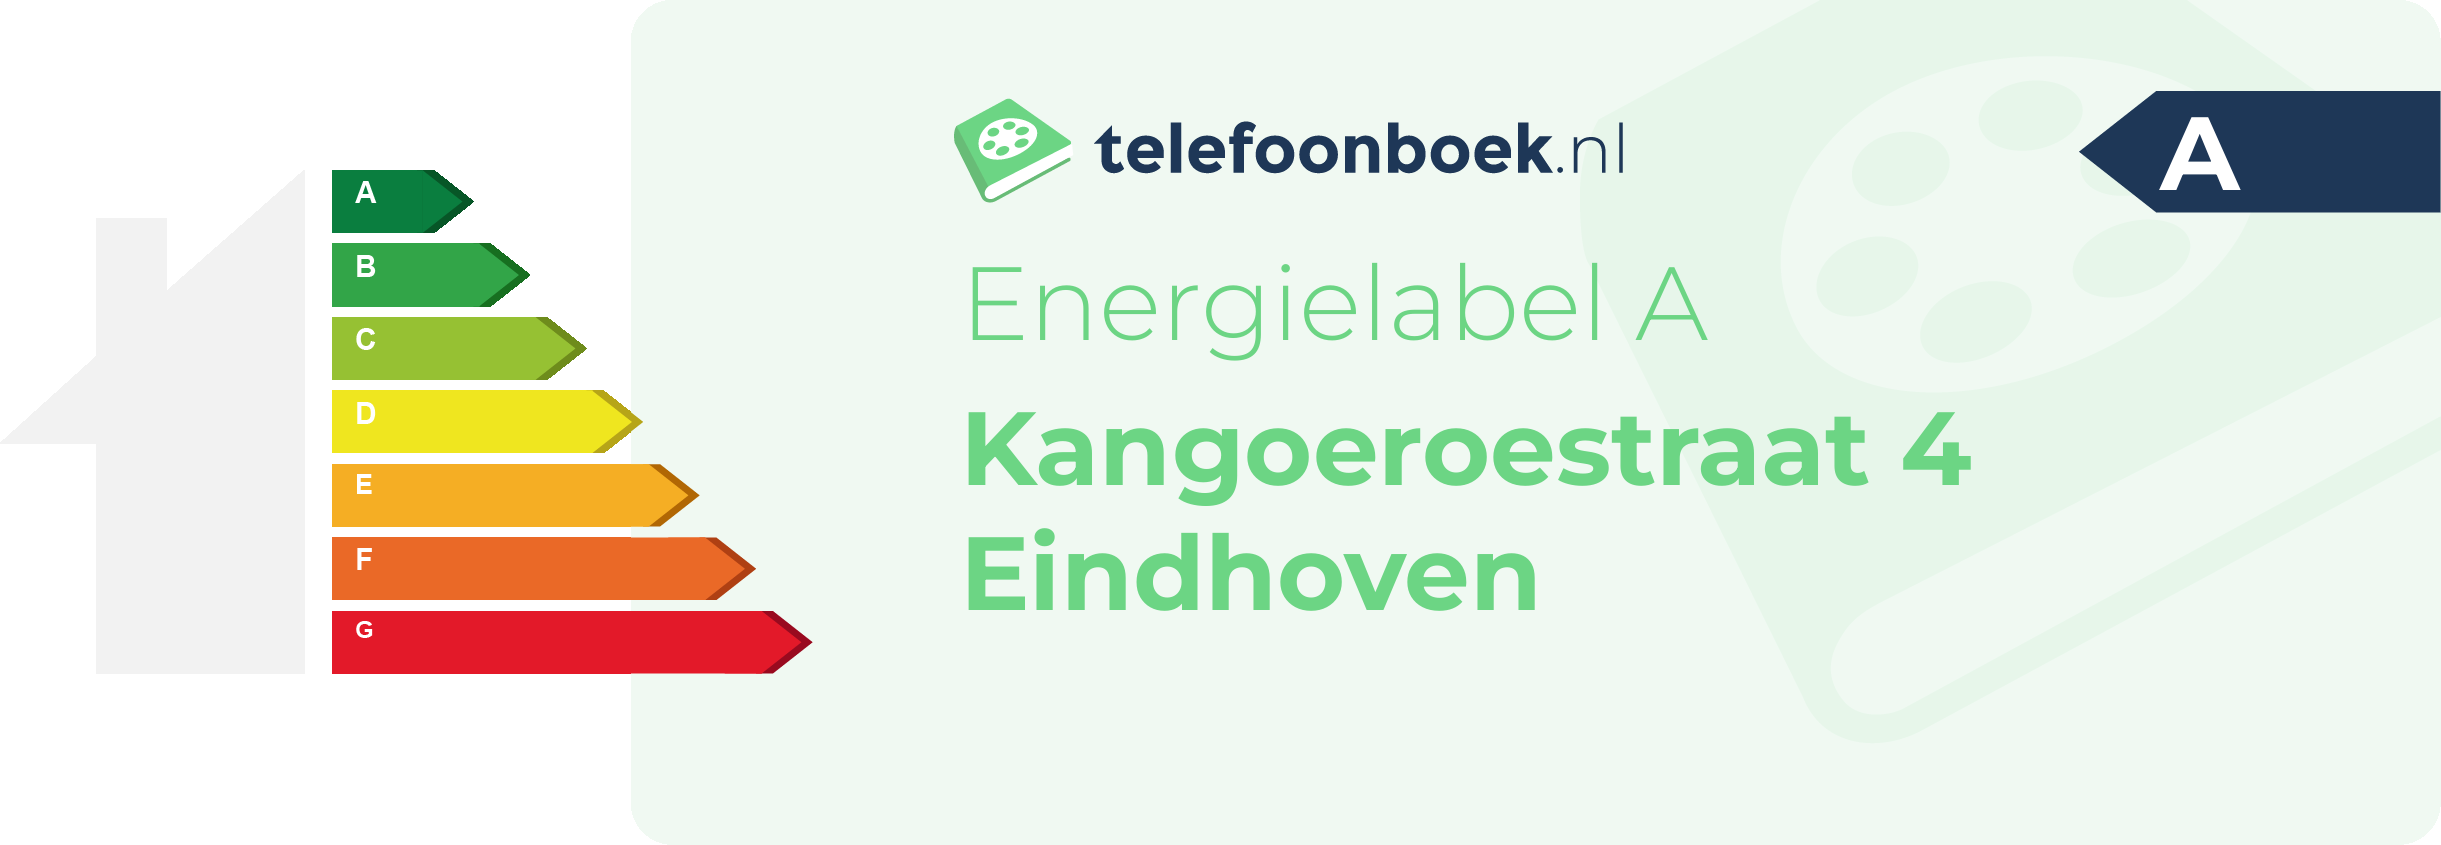 Energielabel Kangoeroestraat 4 Eindhoven